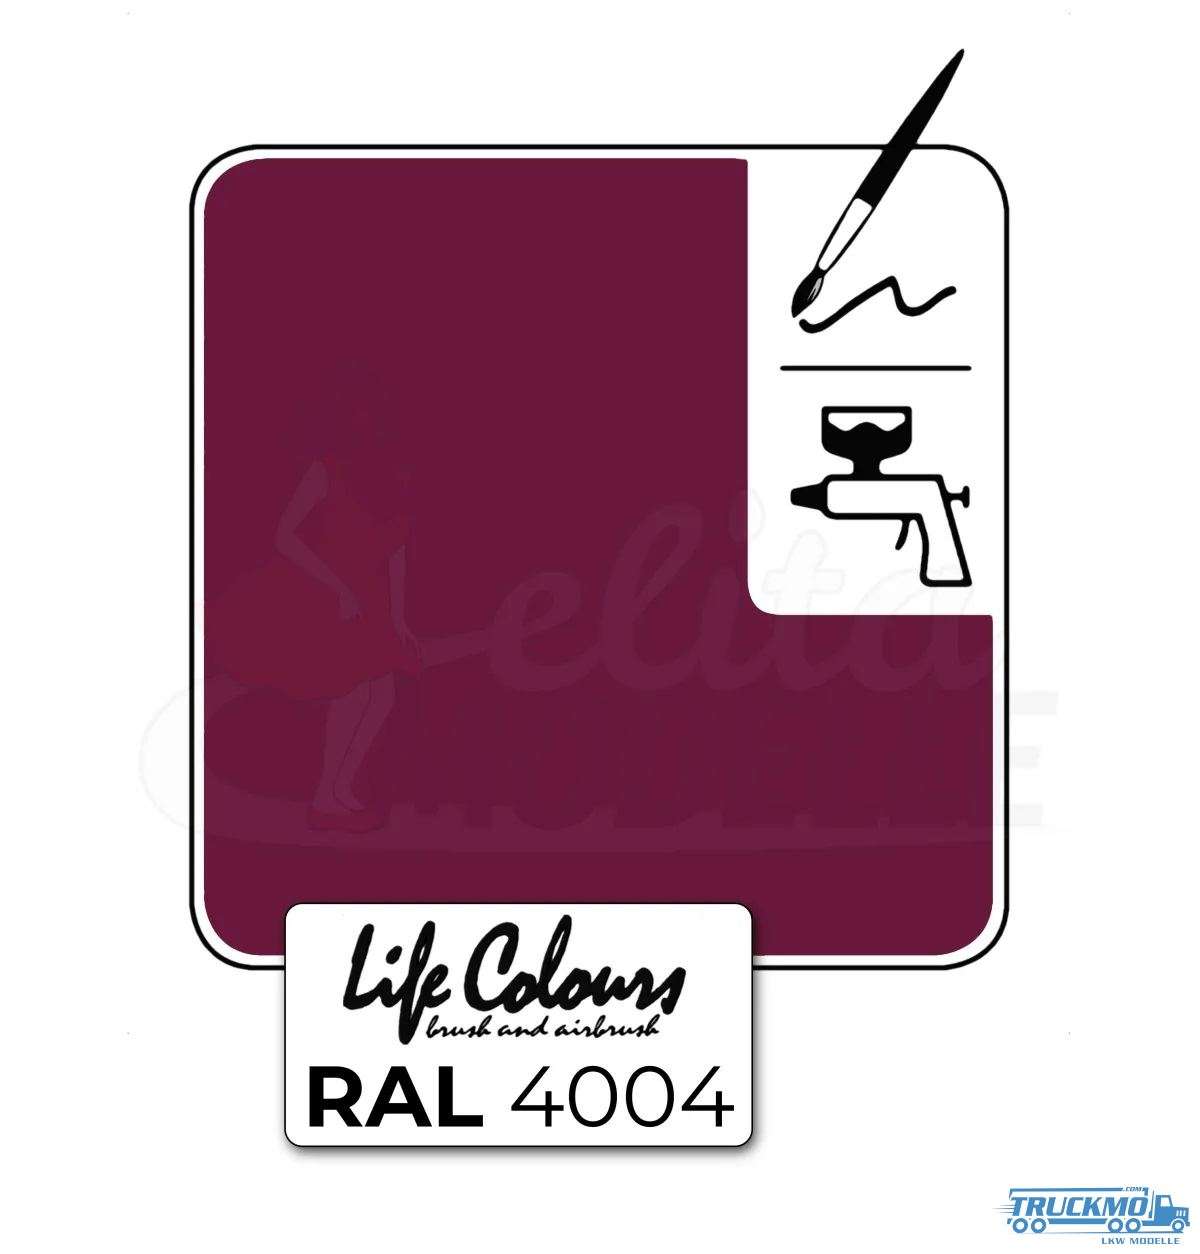 Elita Life Colours RAL 4004 bordeaux violet